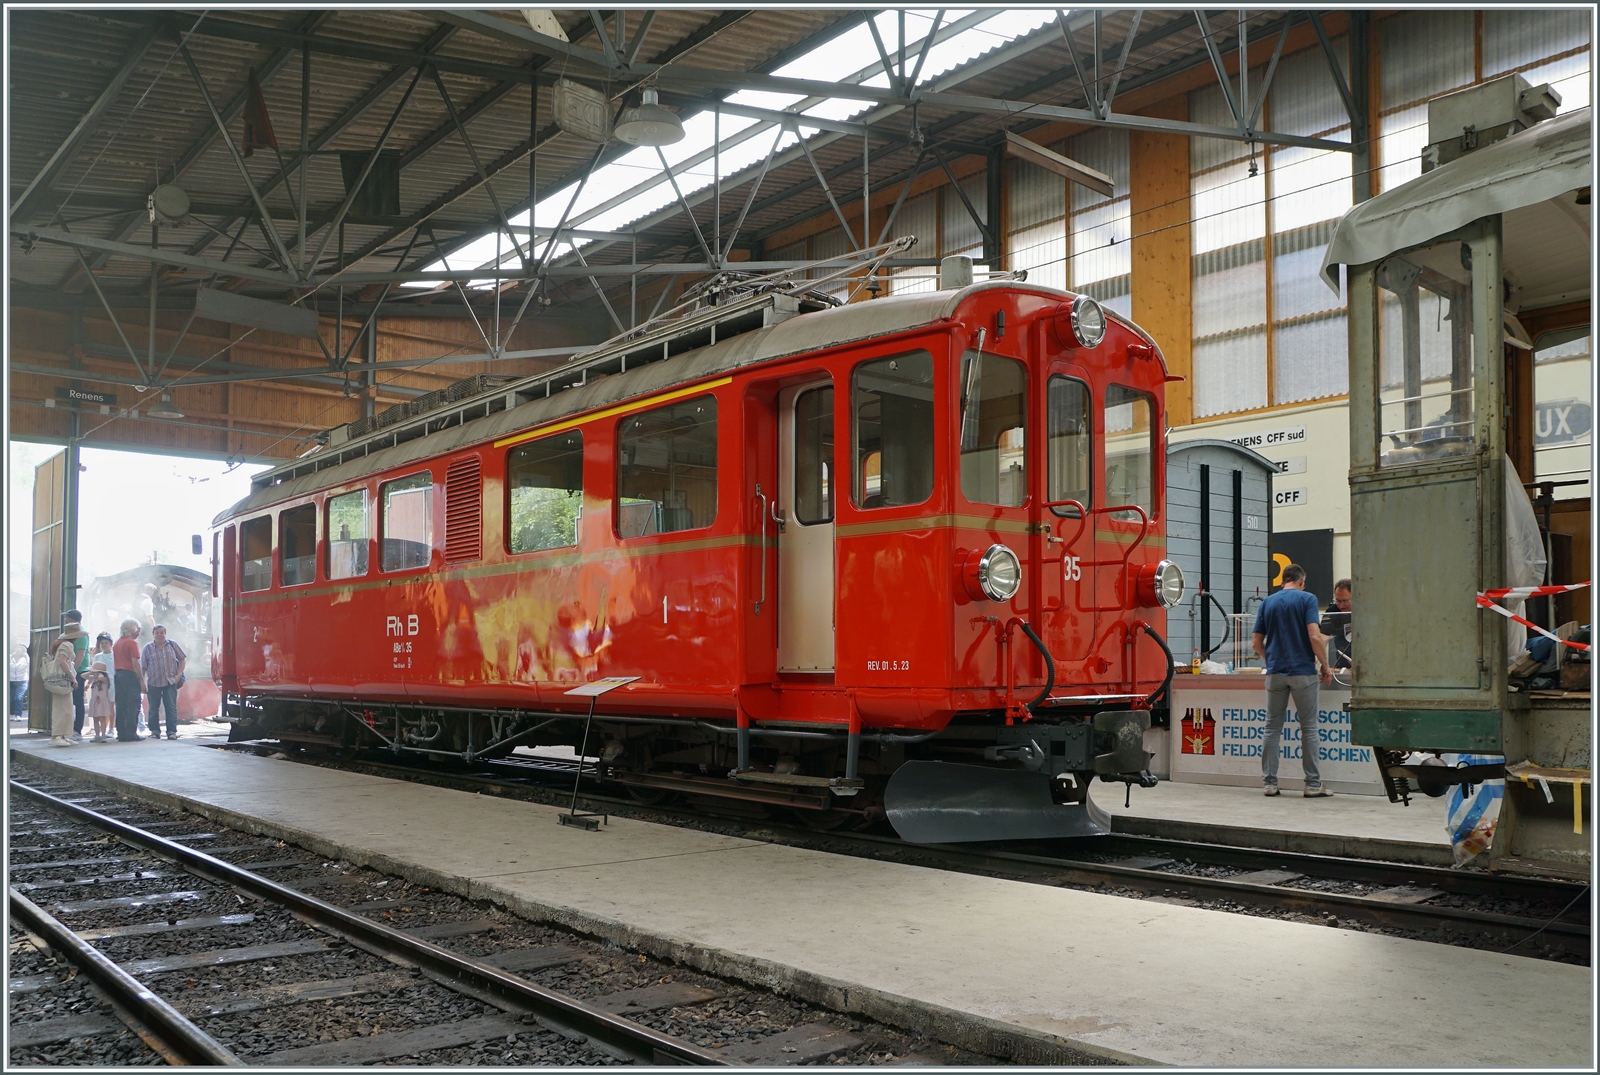 Festival Suisse de la vapeur / Schweizer Dampffestival 2023 der Blonay-Chamby Bahn: Der der RhB Bernina Bahn ABe 4/4 I 35 zeigt sich in der Halle wie ein Museumsstück (mit entsprechender Tafel; zu diesem Zeitpunkt dachte ich, dass noch Arbeiten anstehen, bis der Triebwagen wieder fahrbereit sein wird.

30. Mai 2023 